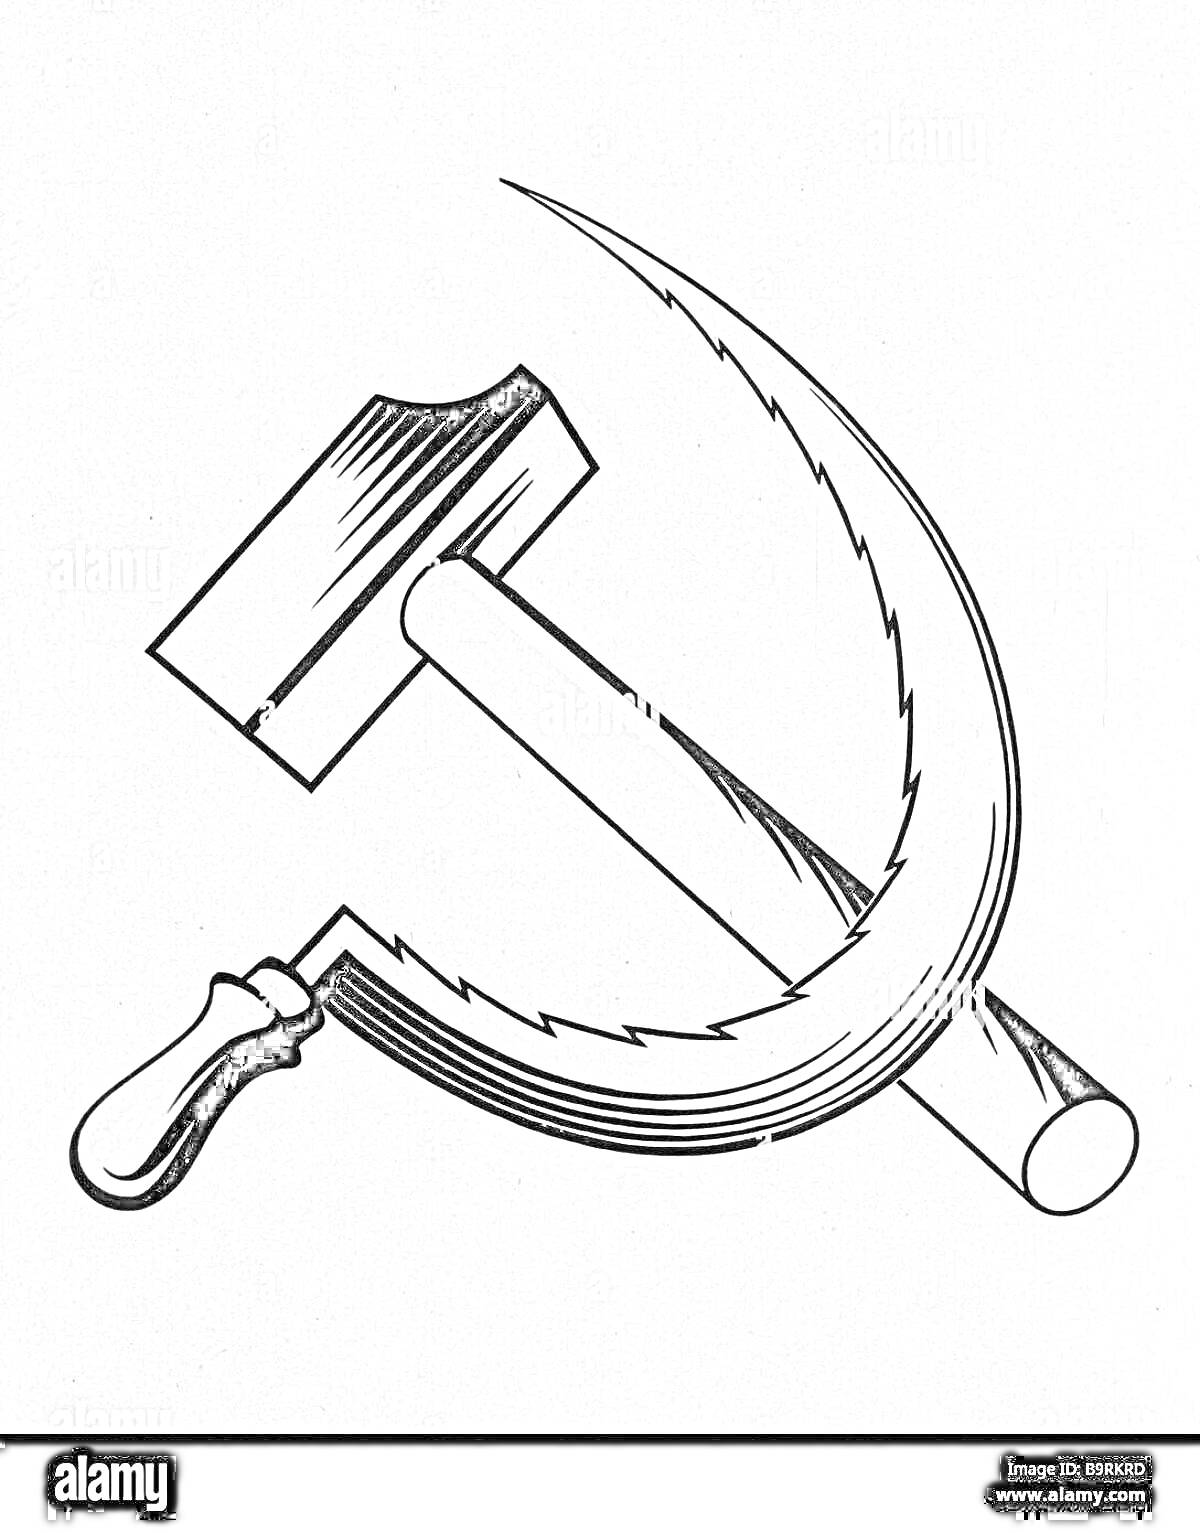 На раскраске изображено: Серп, Молот, Коммунизм, Социализм, Иллюстрация, Инструмент, Графика